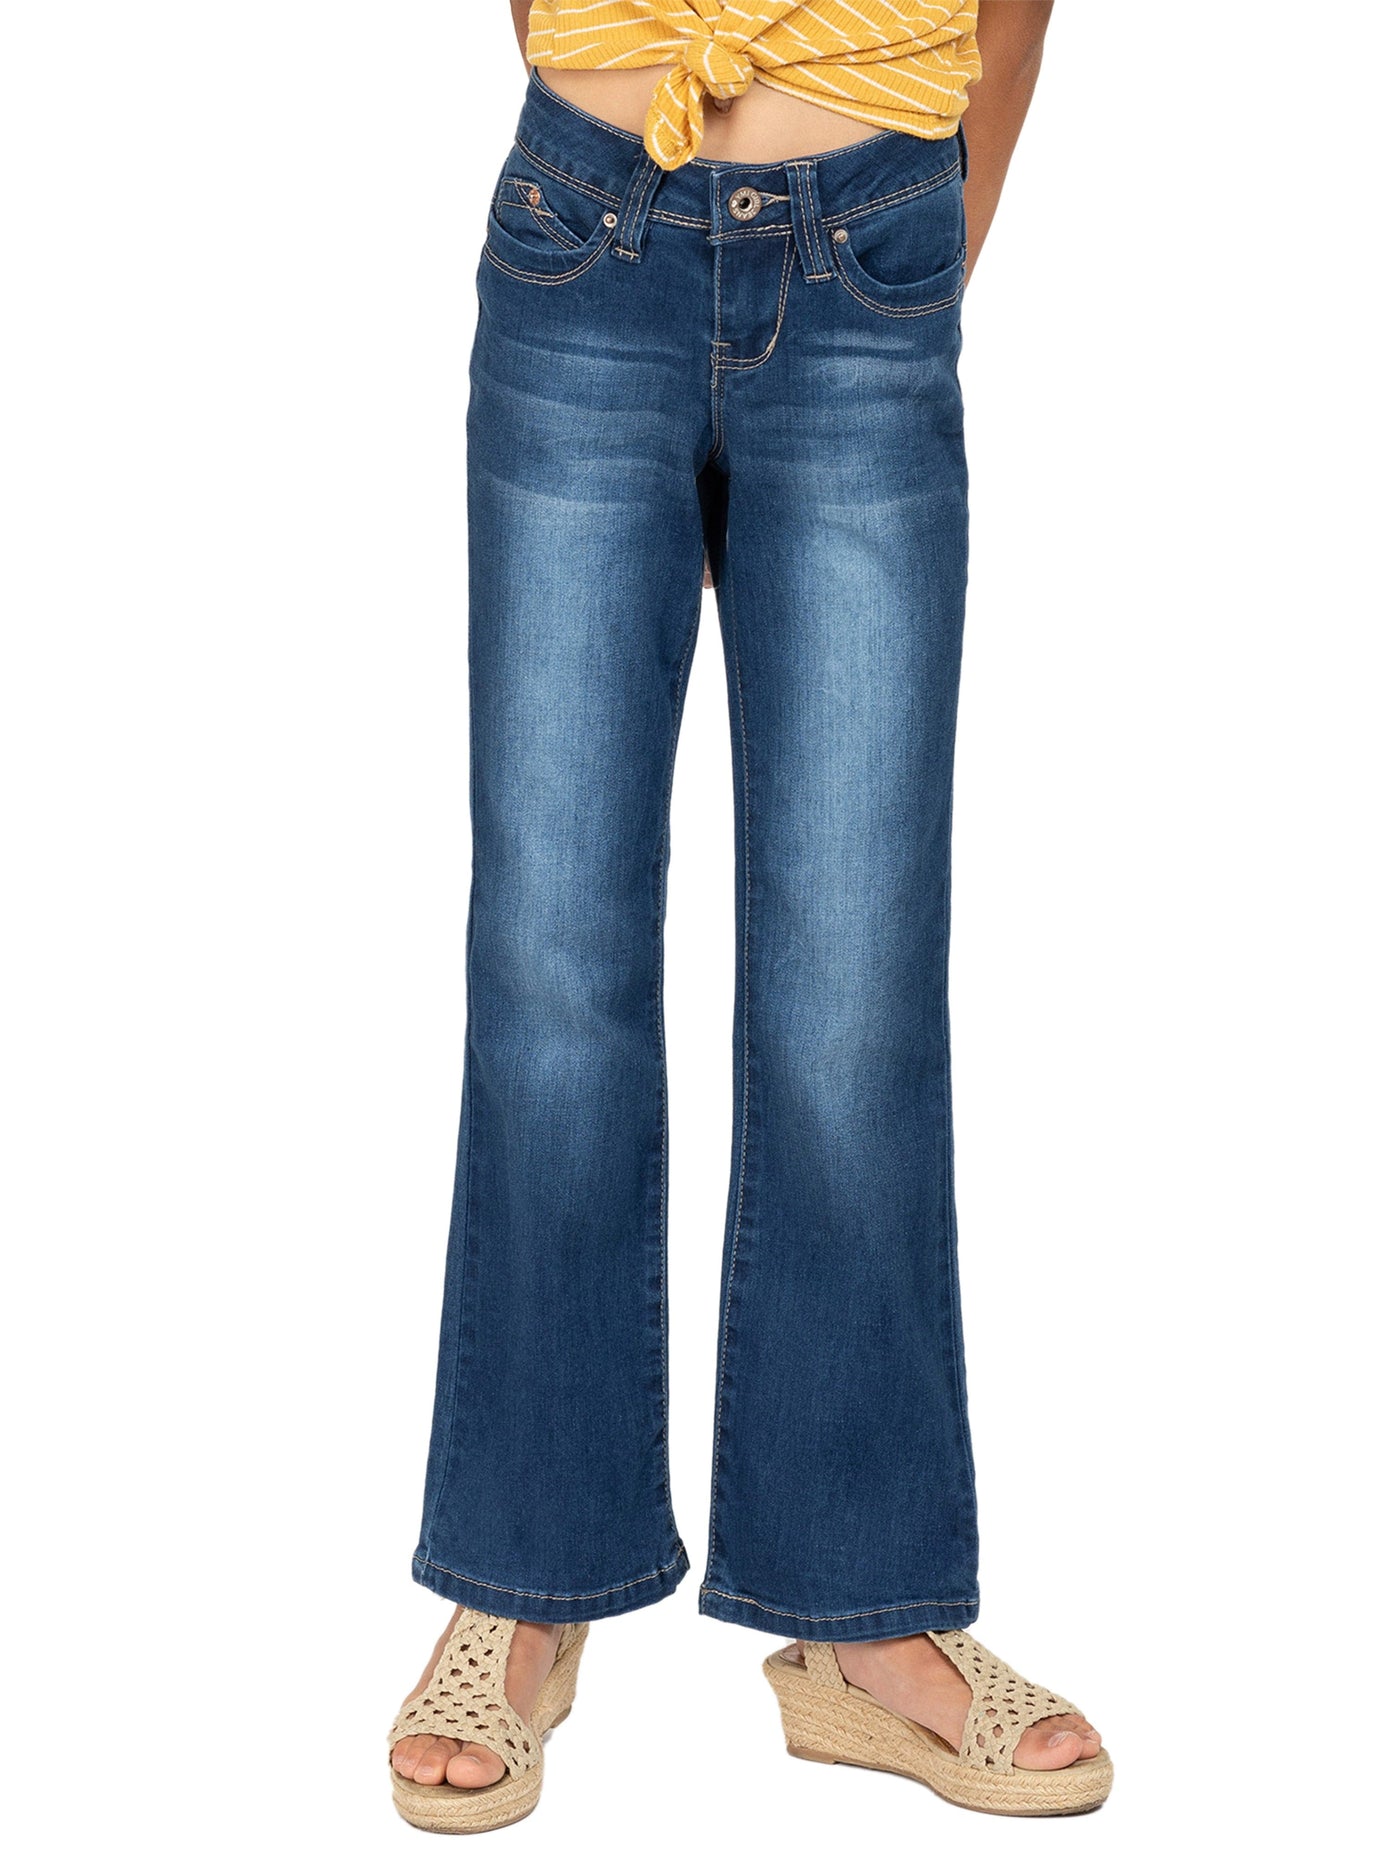 Girls WannaBettaFit Bootcut Jeans